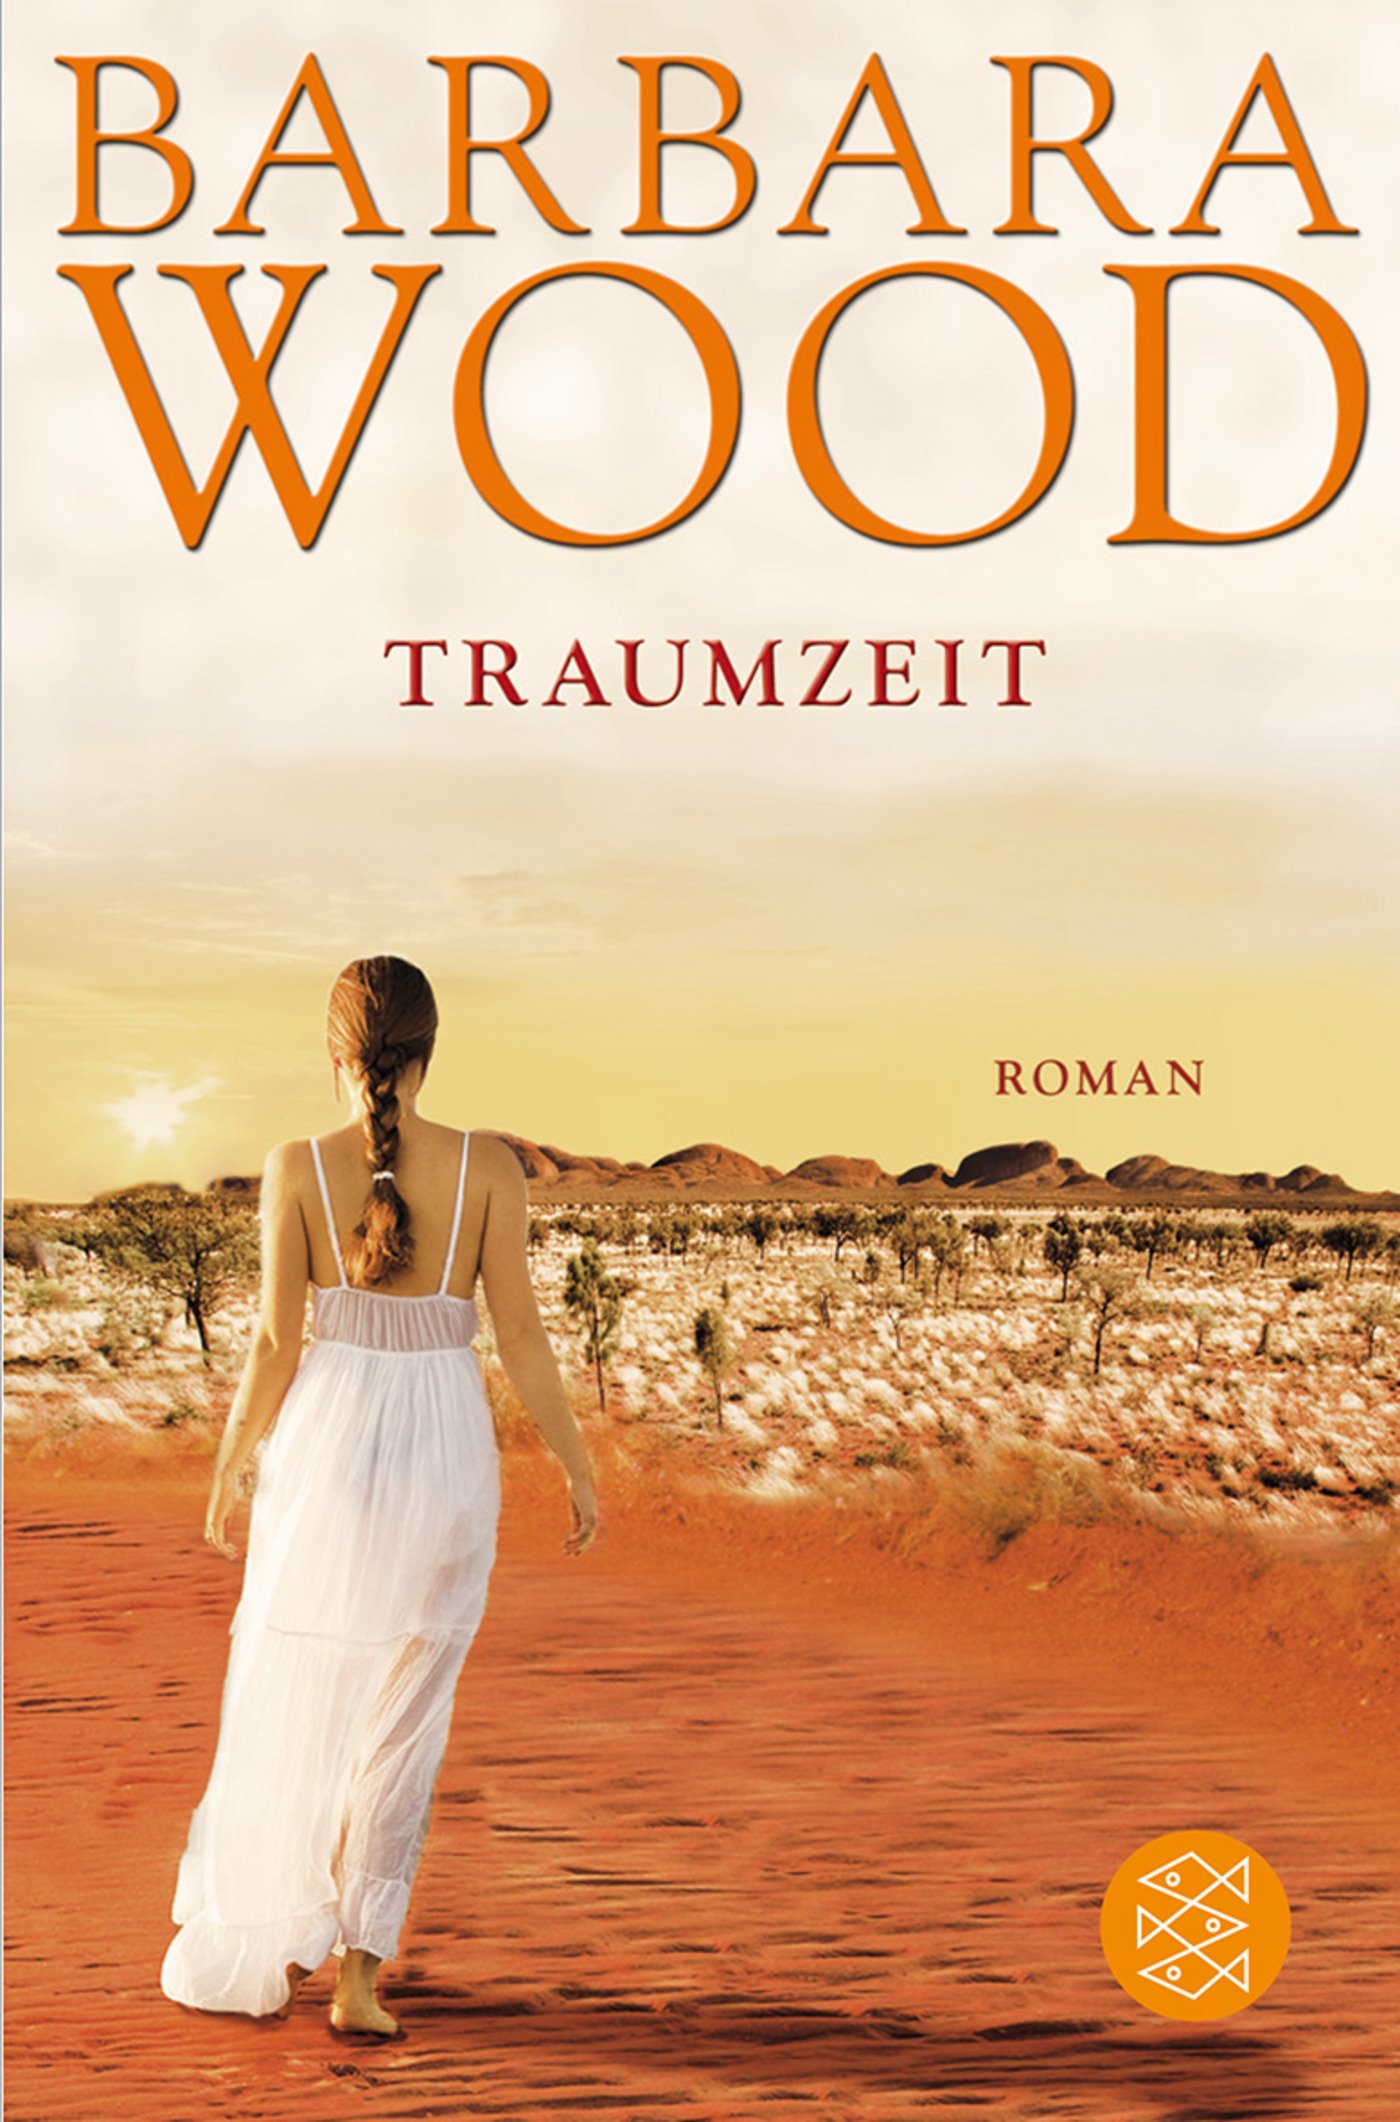 Traumzeit Roman - Wood, Barbara, Manfred Ohl und Hans Sartorius